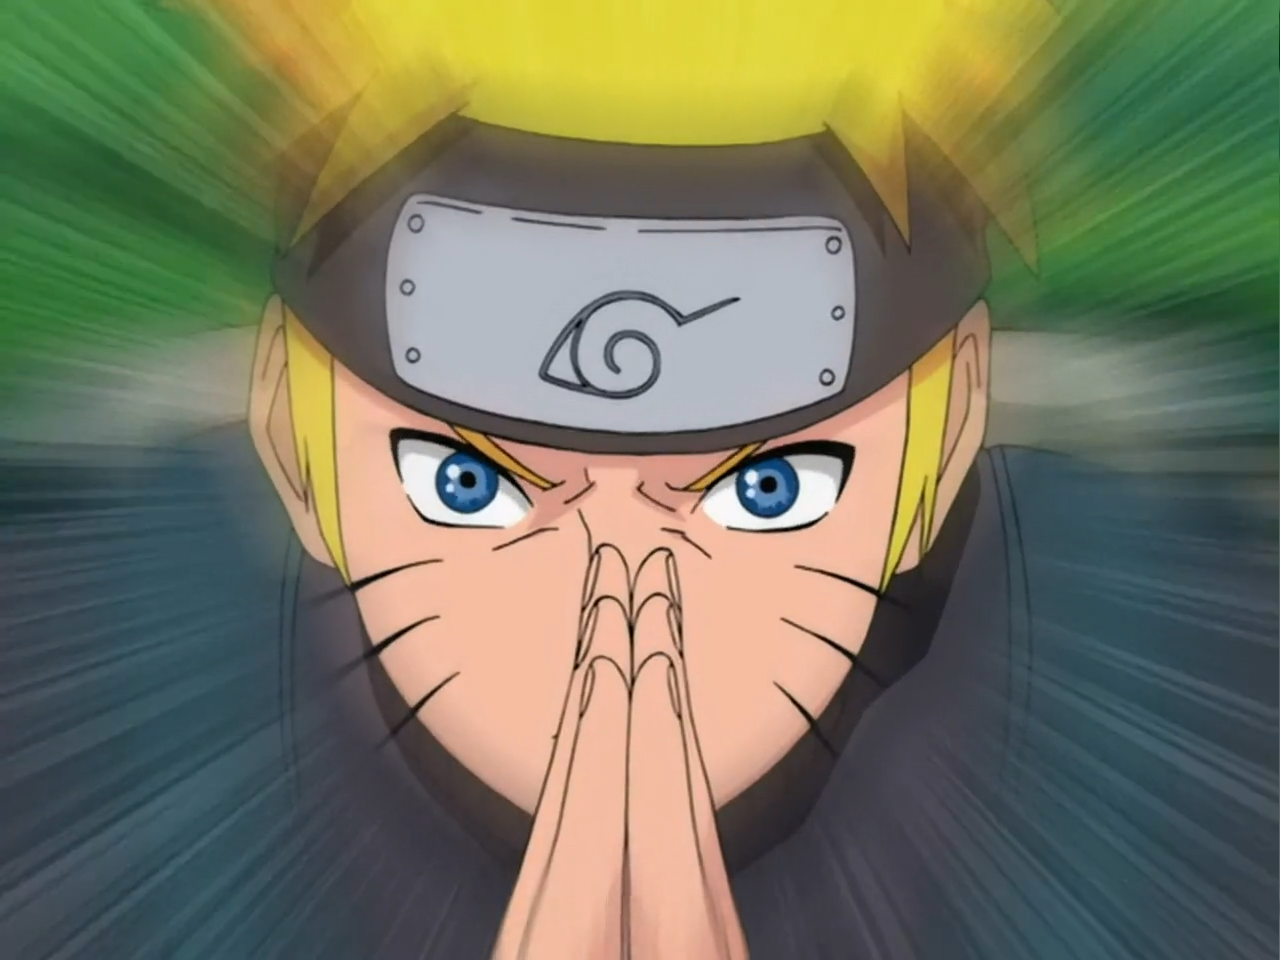 Naruto: Shippuden (season 1) - Wikipedia